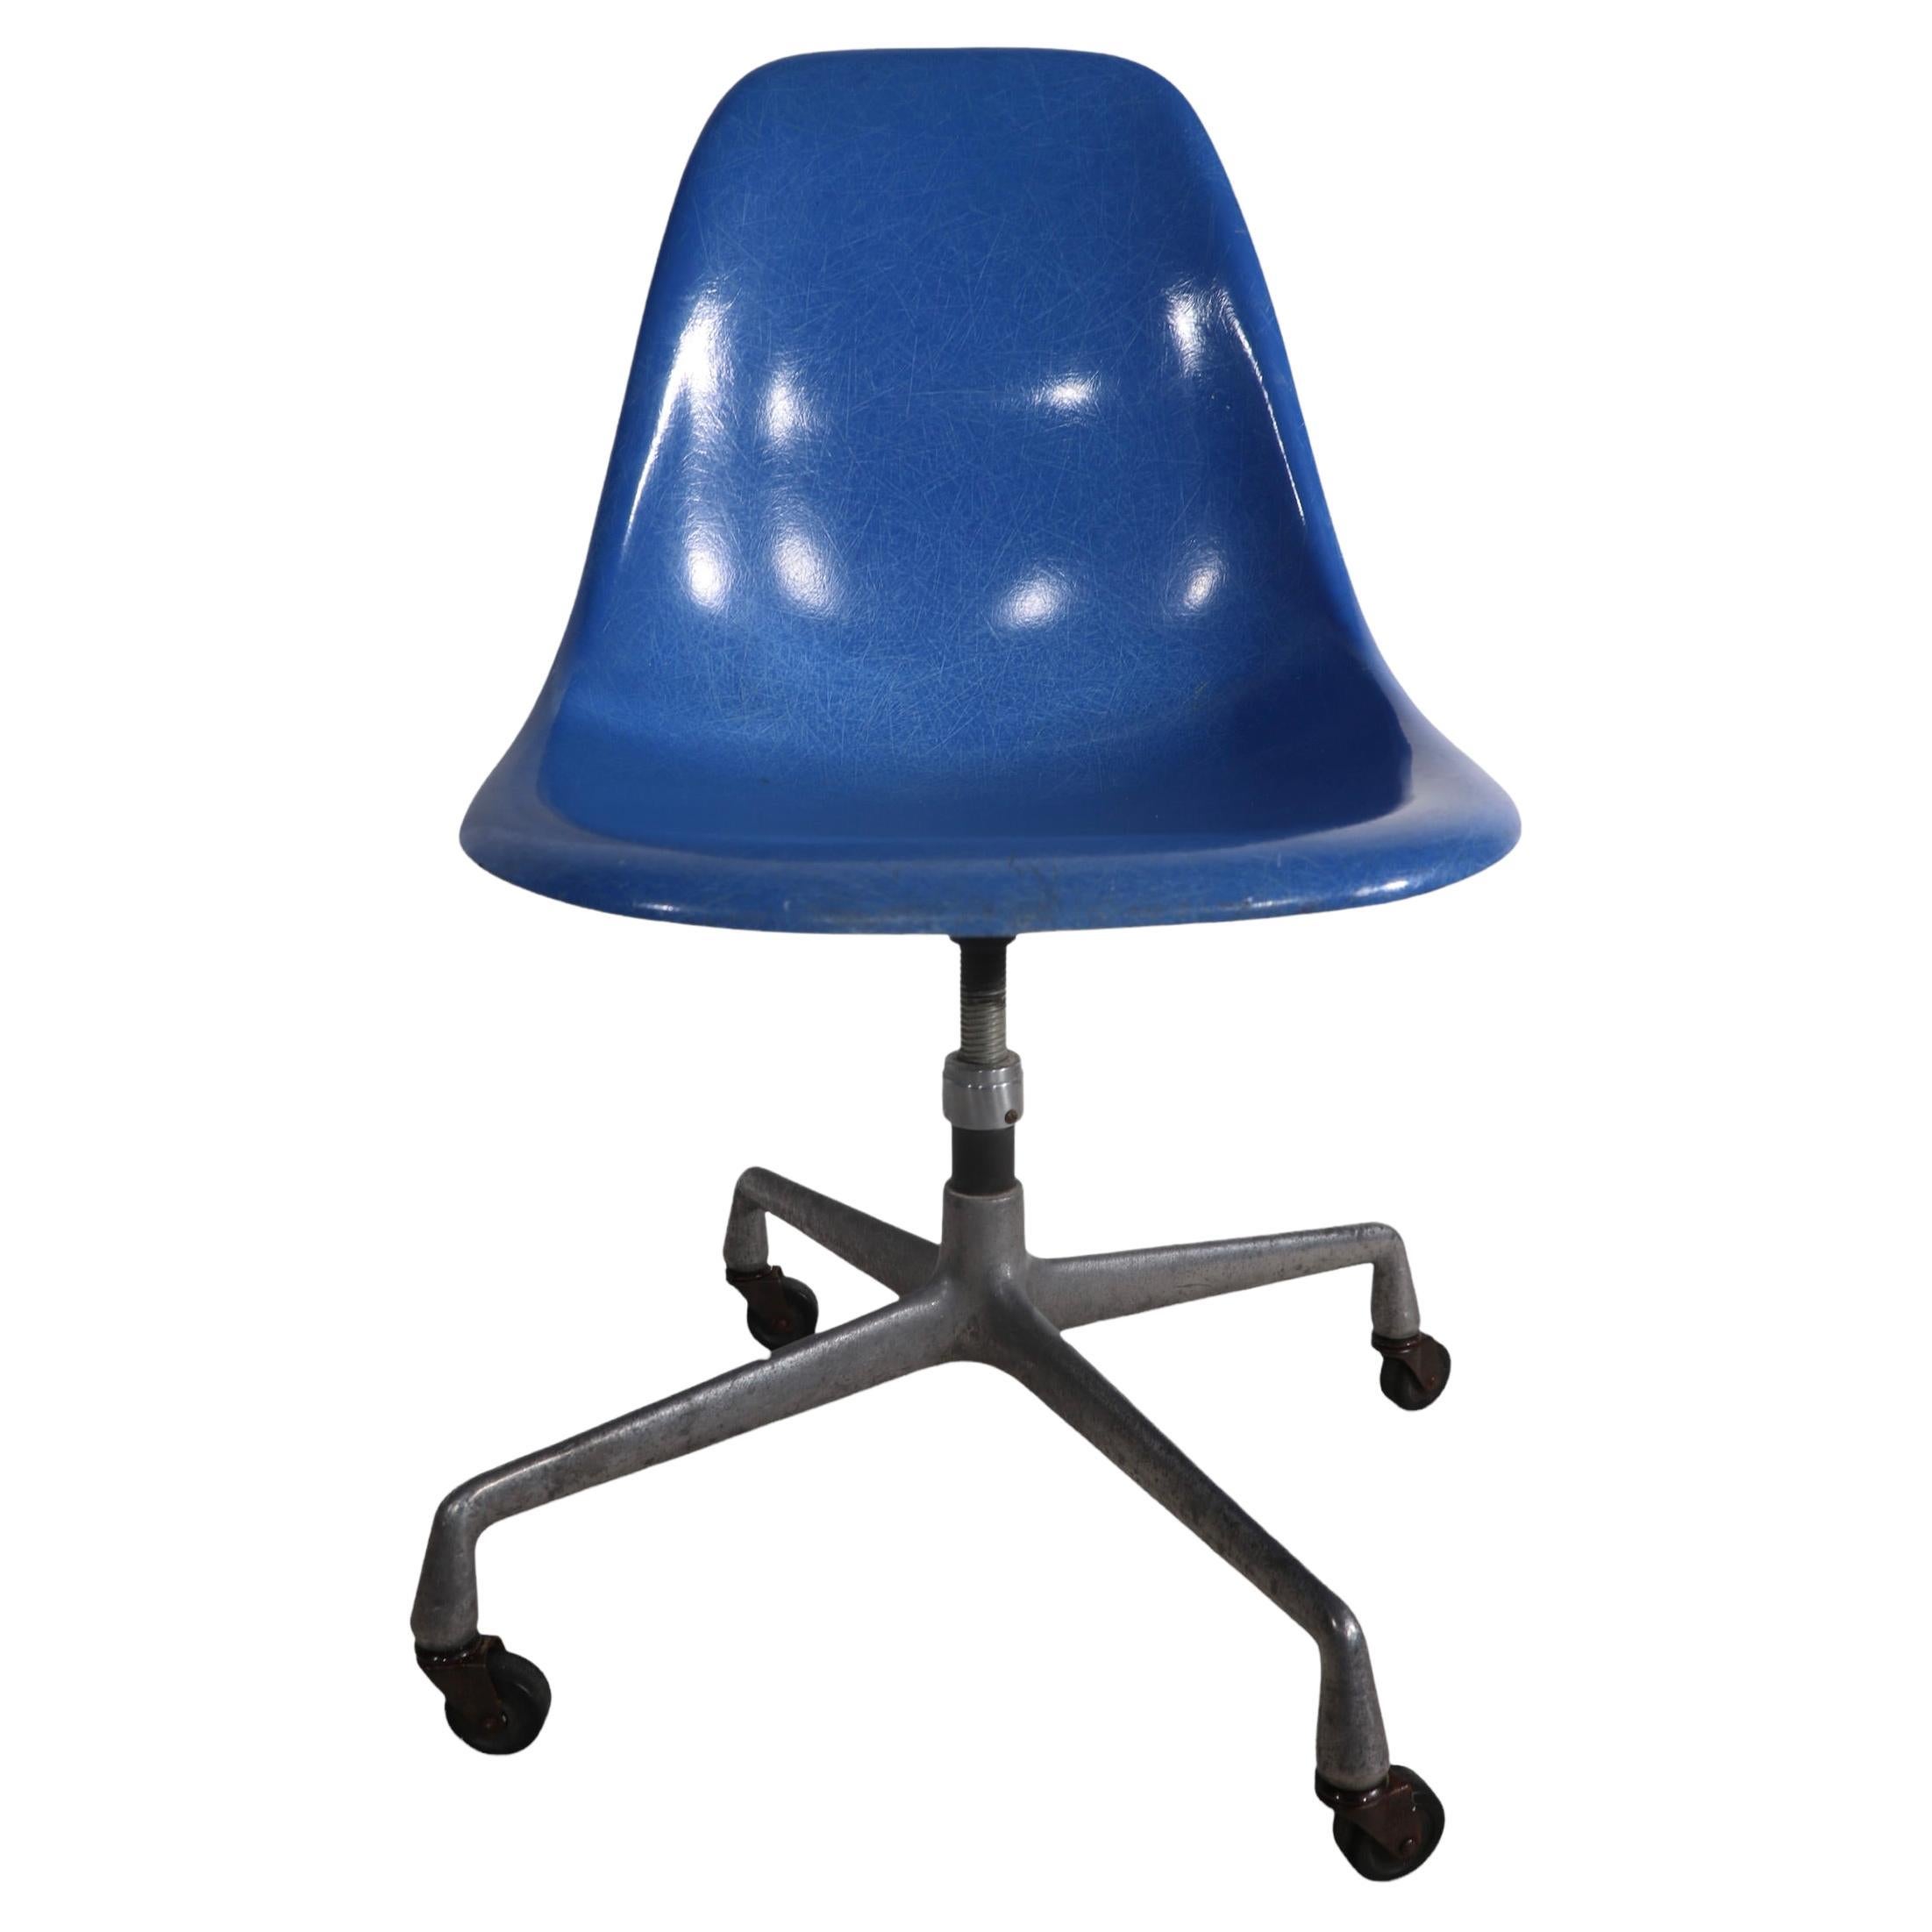 Eames Herman Miller Aluminum Base Swivel Desk Office Chair in Blue Fiberglass